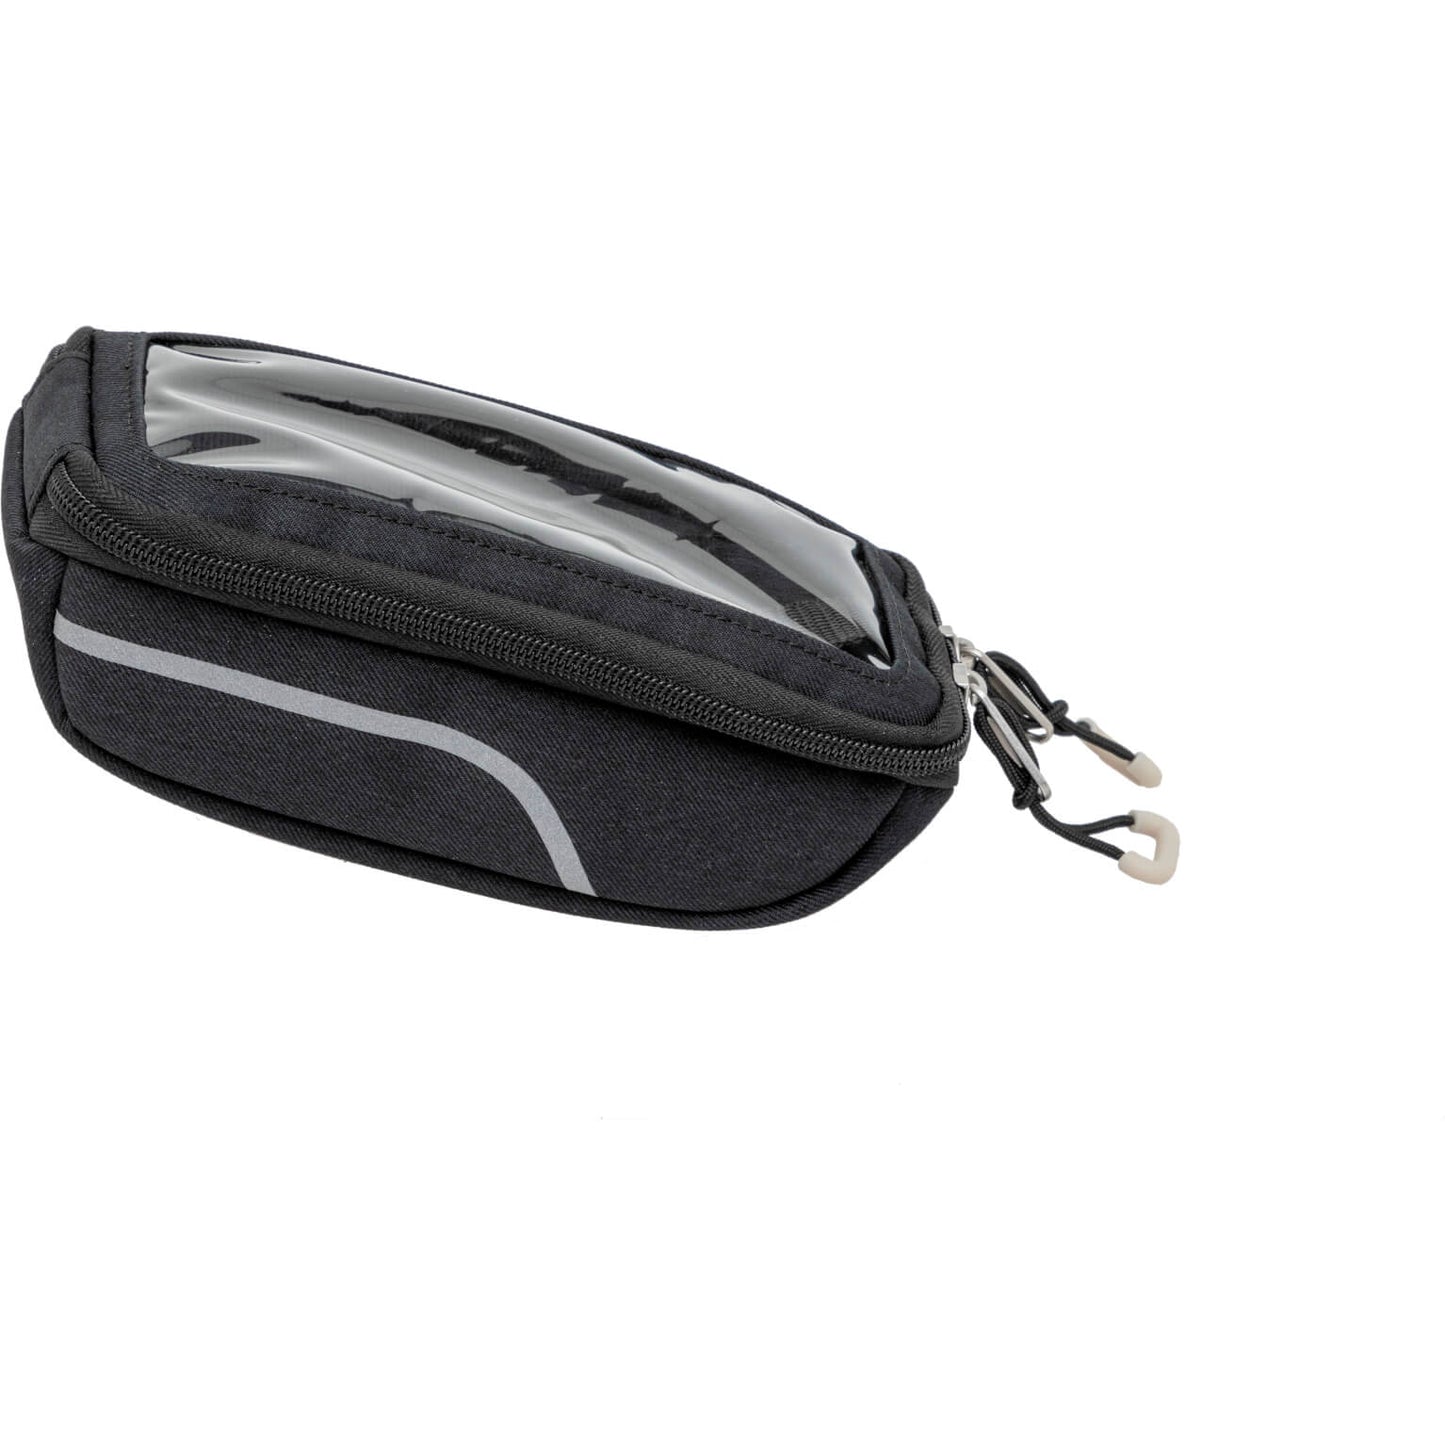 Newloxs BAS Sports Phonebag Quad System Black